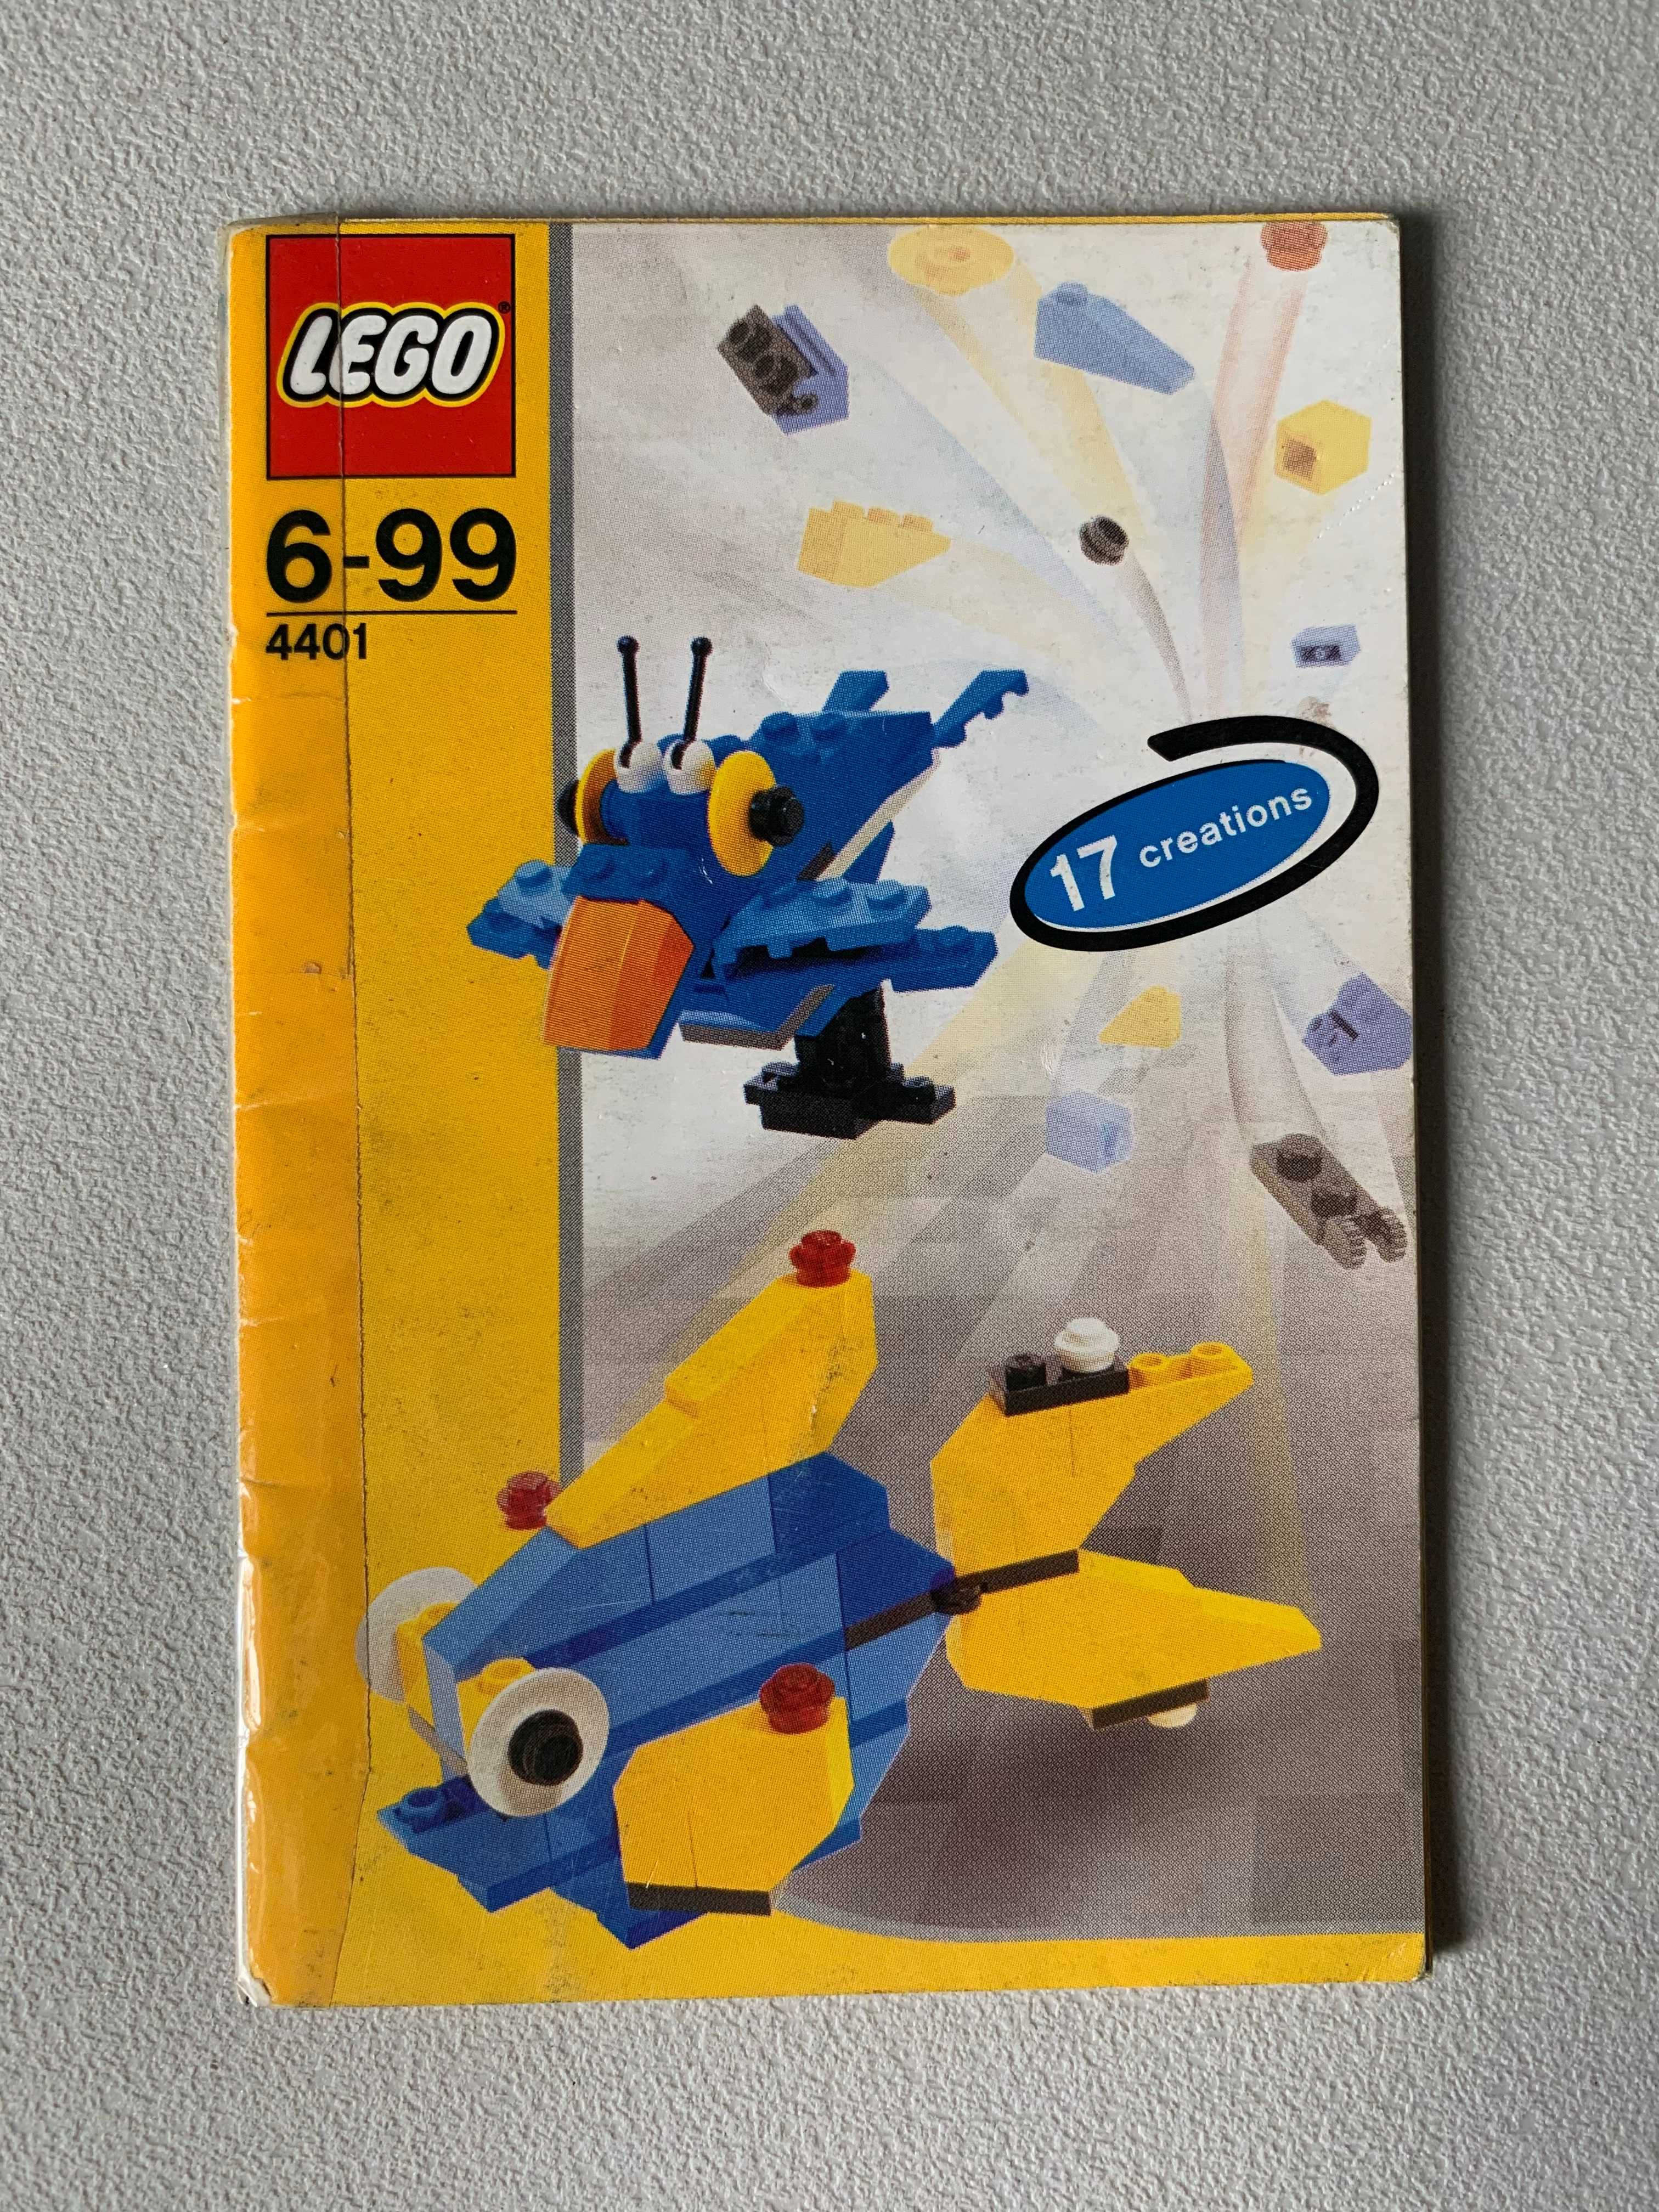 Manual Lego 4401